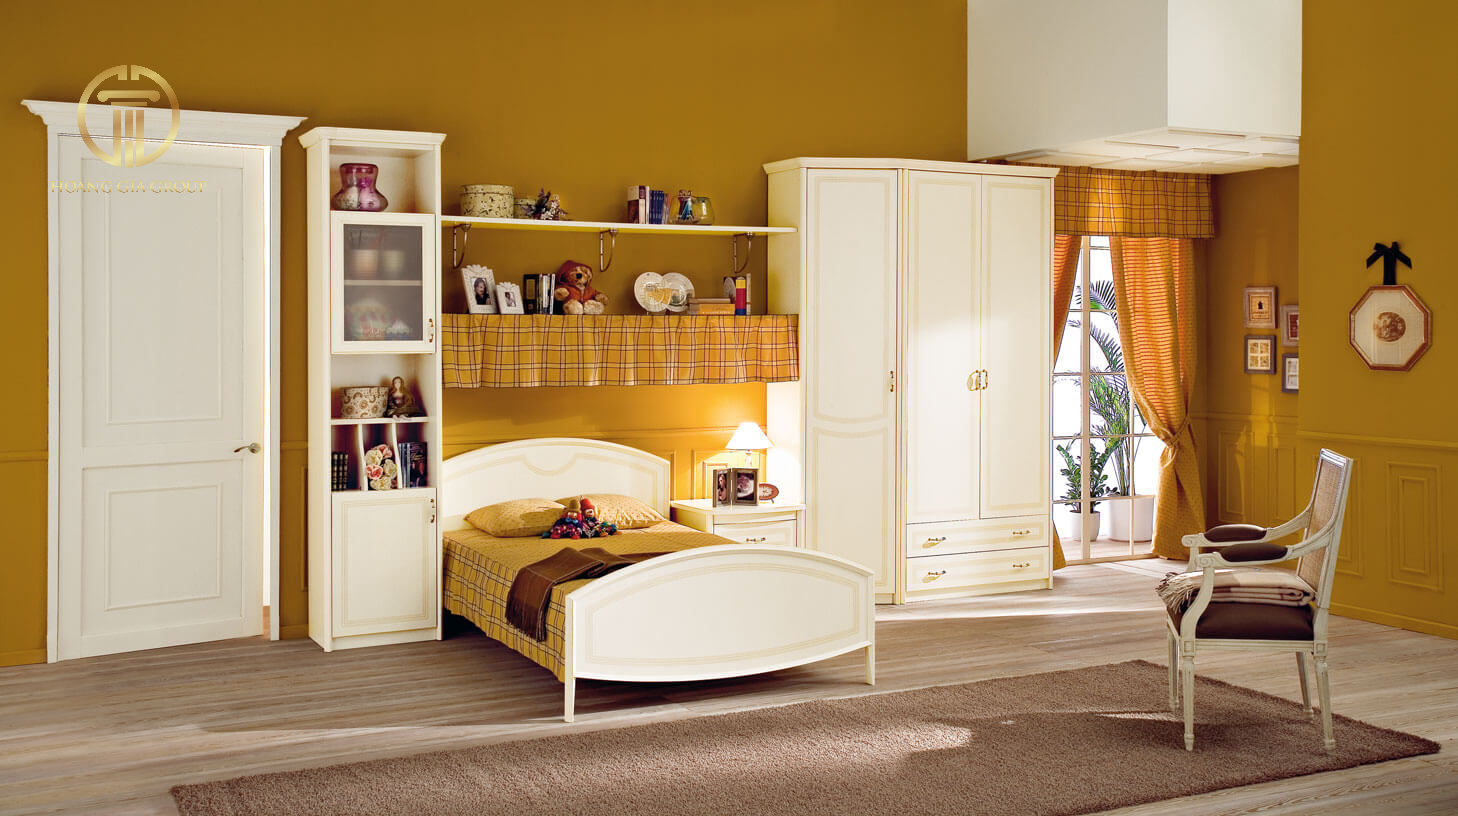 Căn phòng mang hơi hướng tân cổ điển hiện đại nổi bật với 2 gam màu chủ đạo vàng và trắng